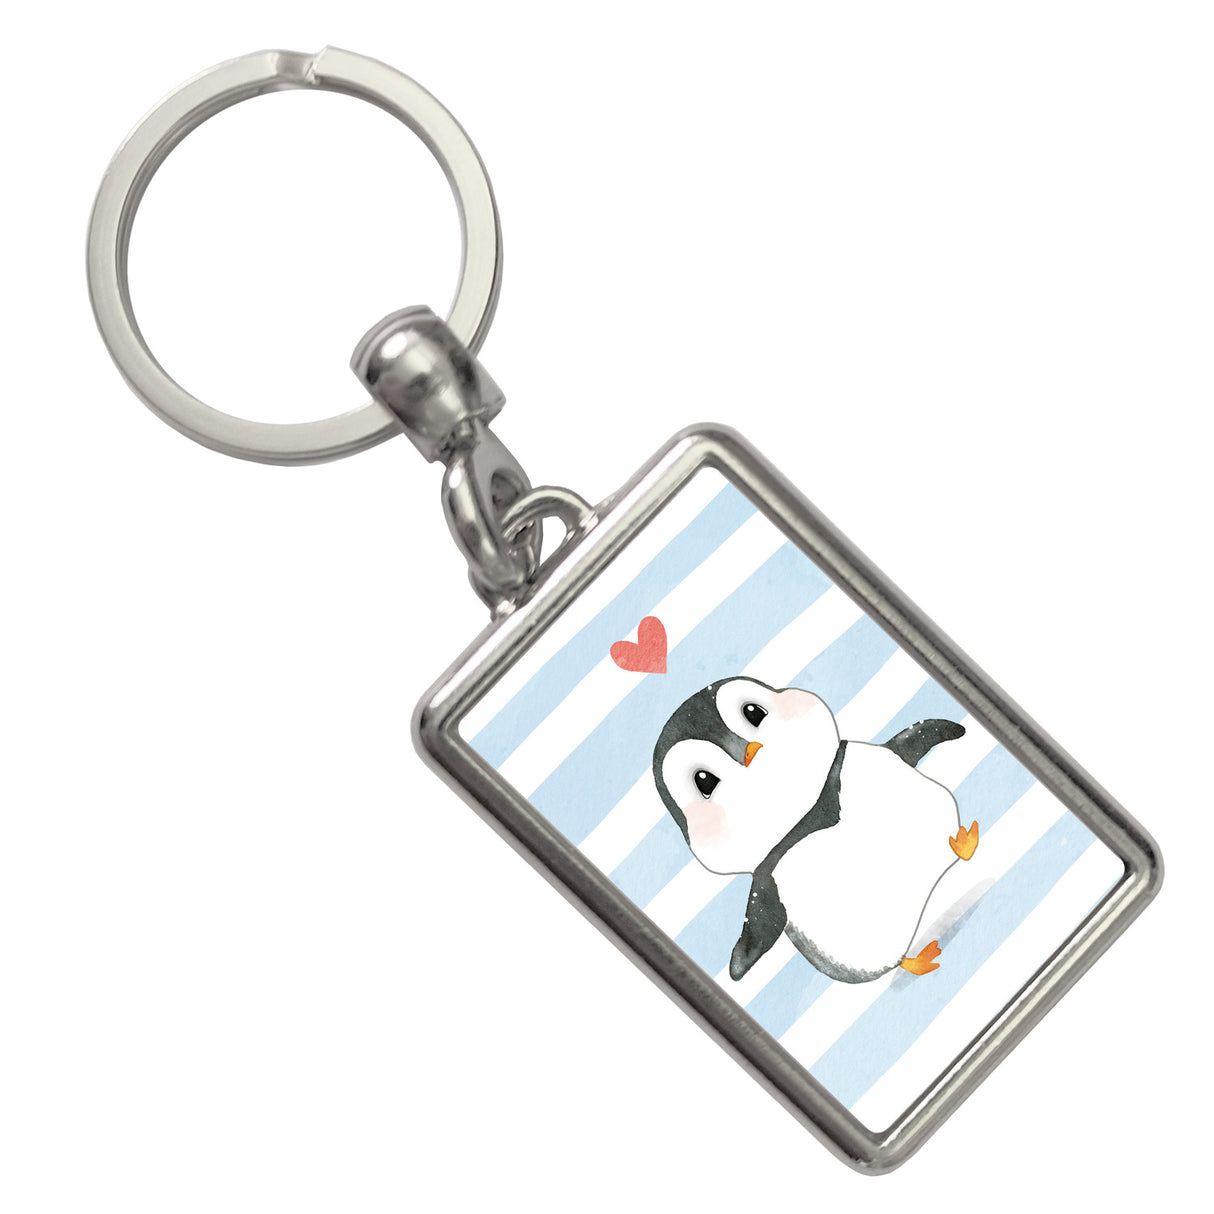 Pinguin Schlüsselanhänger: Jetzt kaufen und verschenken